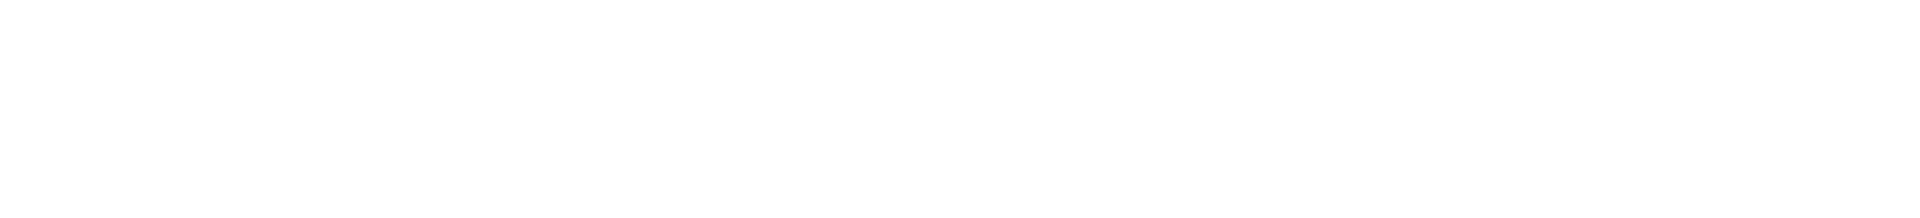 neadho landscaping logo